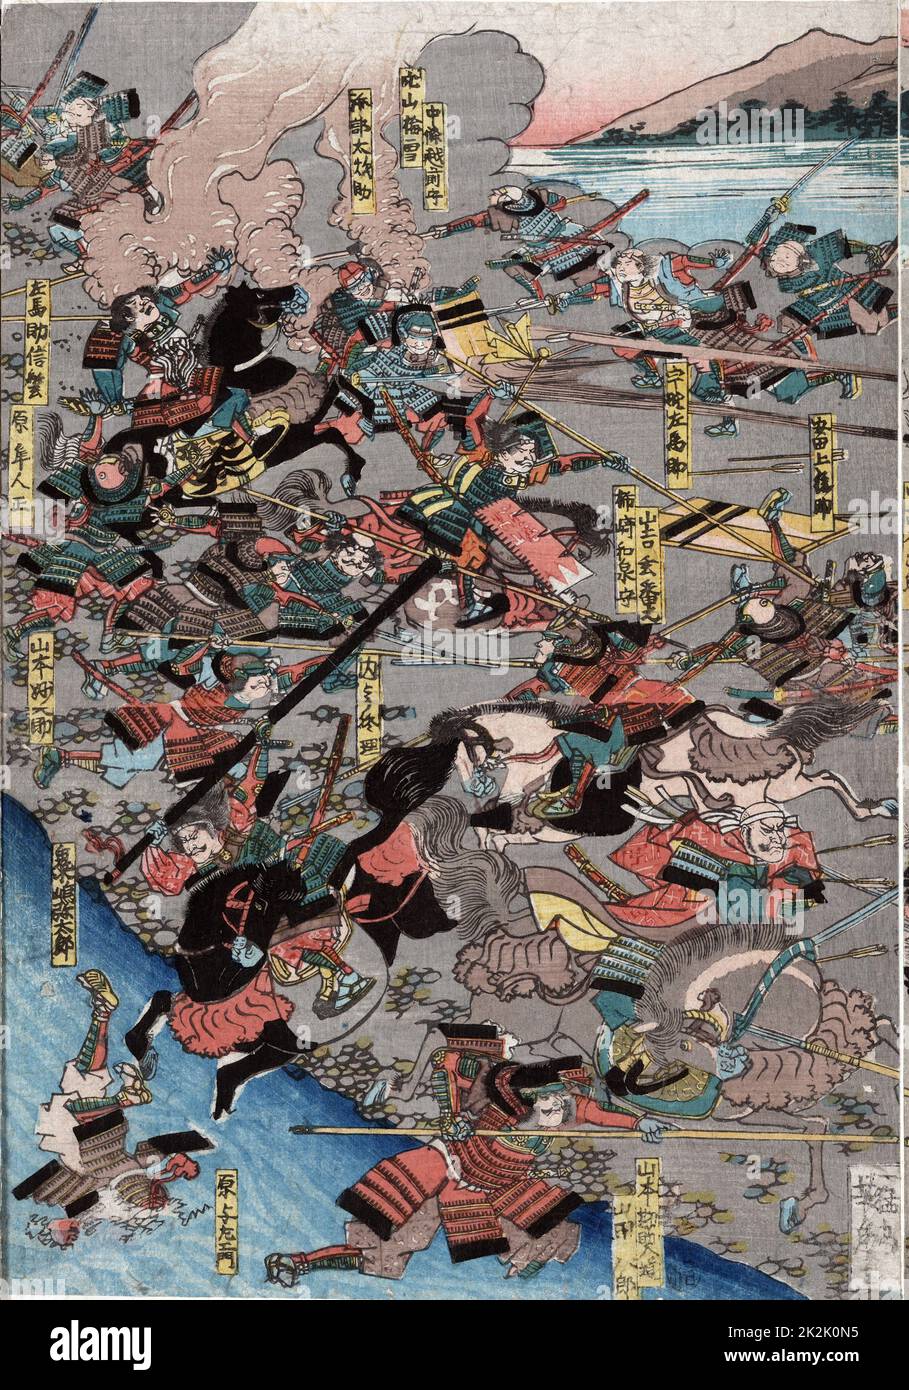 Die grosse Schlacht von Shinsu Kawanakjima in: Wahrscheinlich der 1561 vierte Schlacht zwischen den Warlords Takeda Shingen und Uesugi Keushin auf den Ebenen der Chikmu River. Utagawa Yoshitoro (1850-1870), japanischer Künstler. Stockfoto